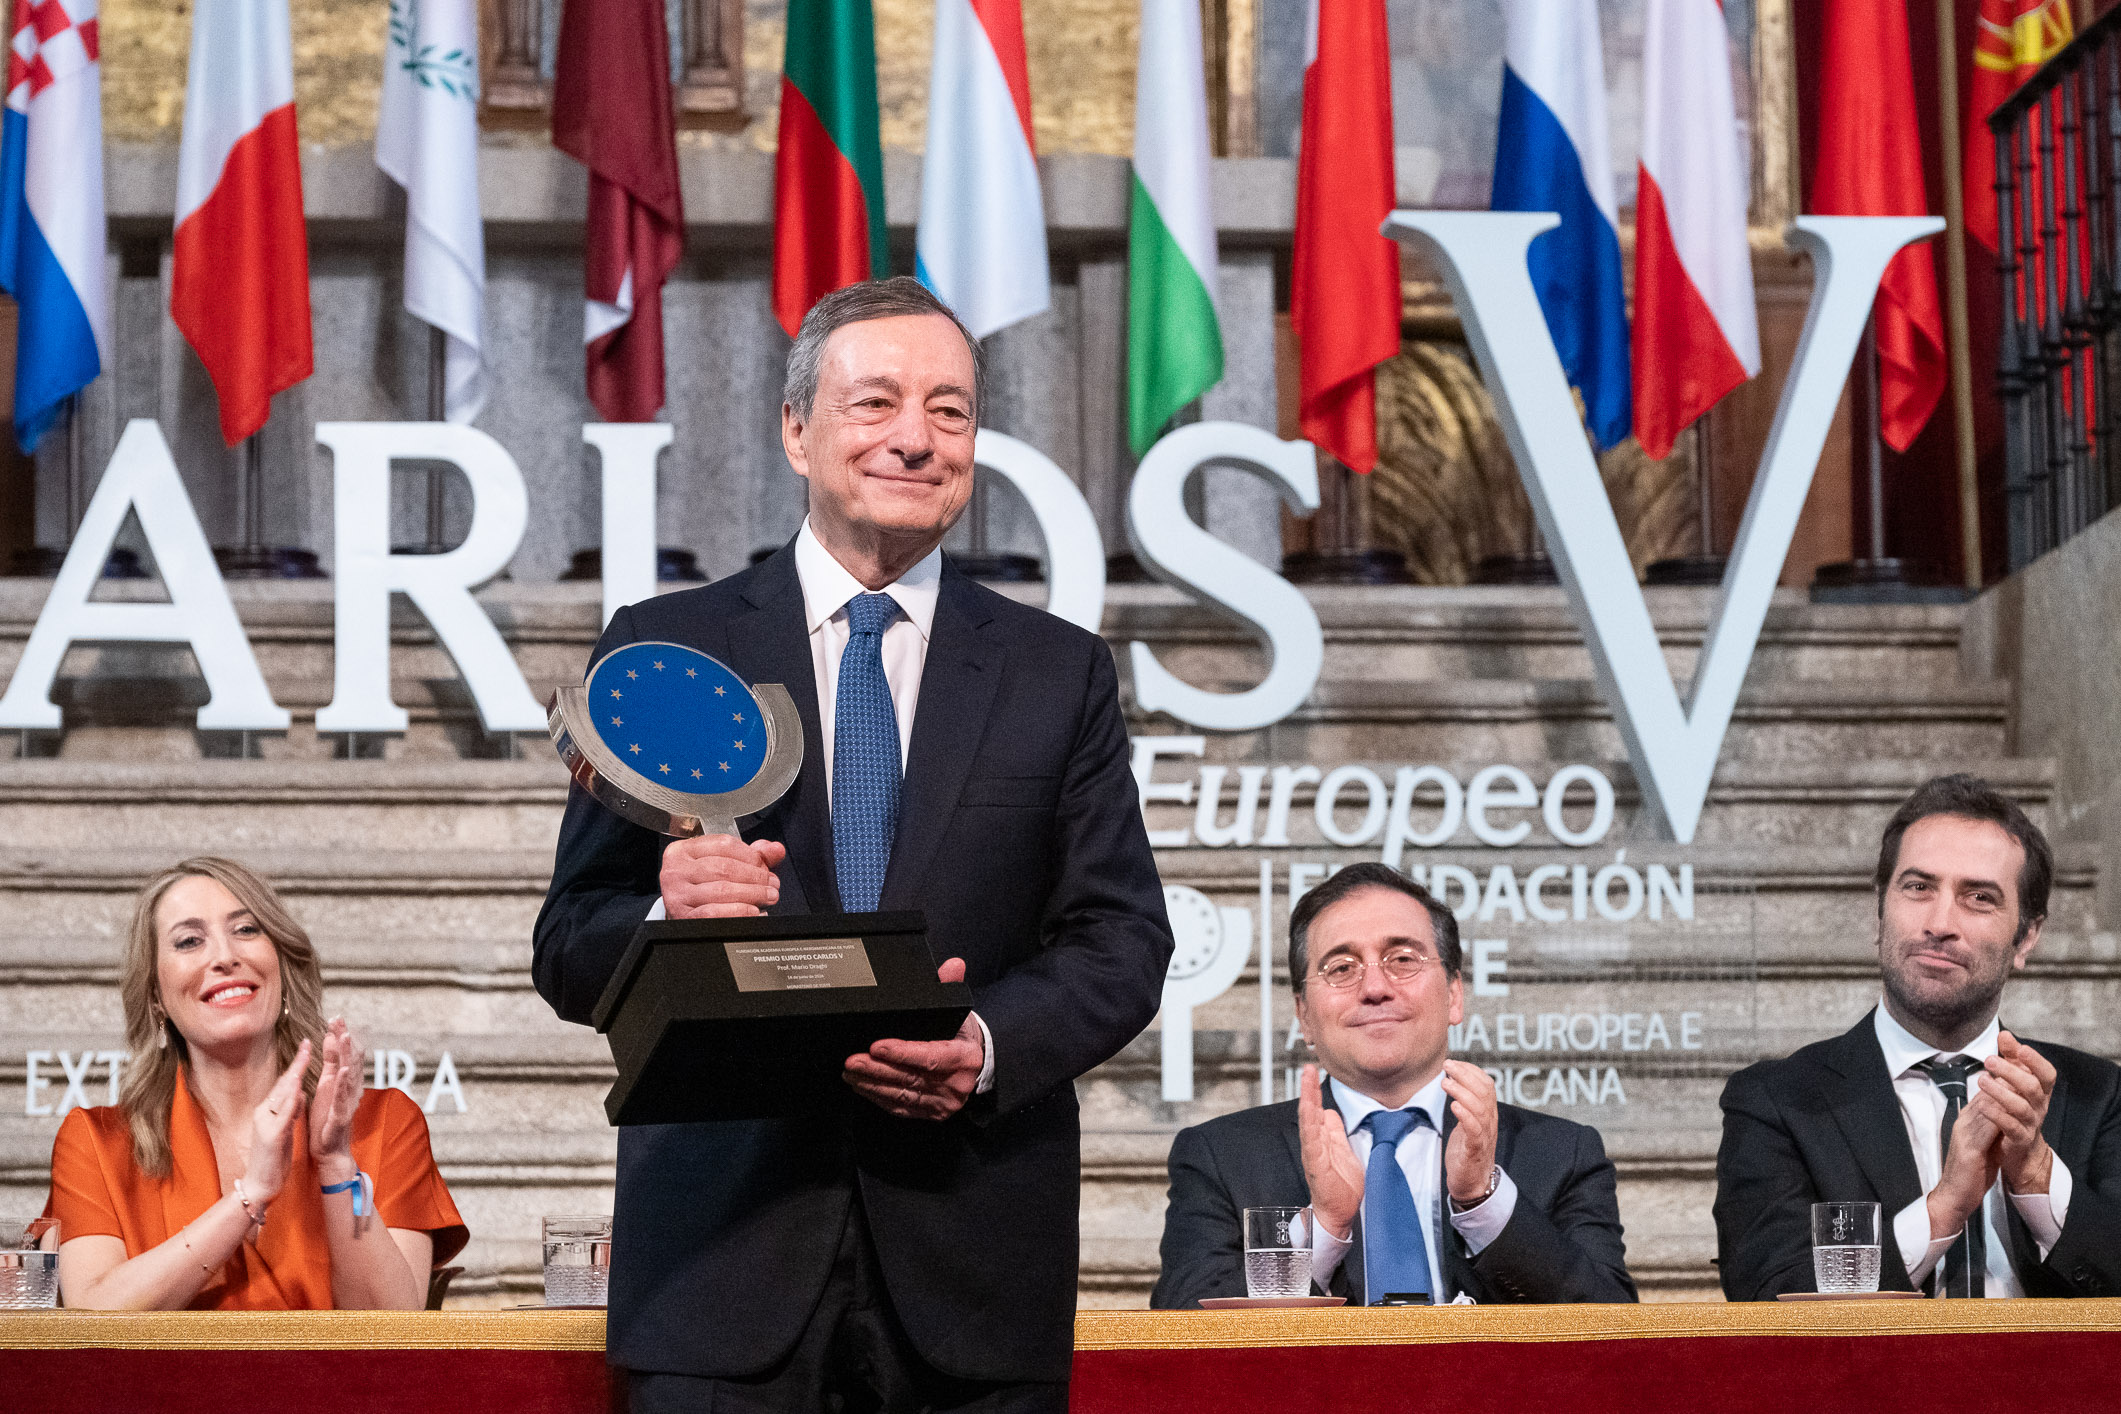 Image 4 of article María Guardiola destaca la labor, rigor y coraje de Mario Draghi en momentos delicados para la Unión Europea